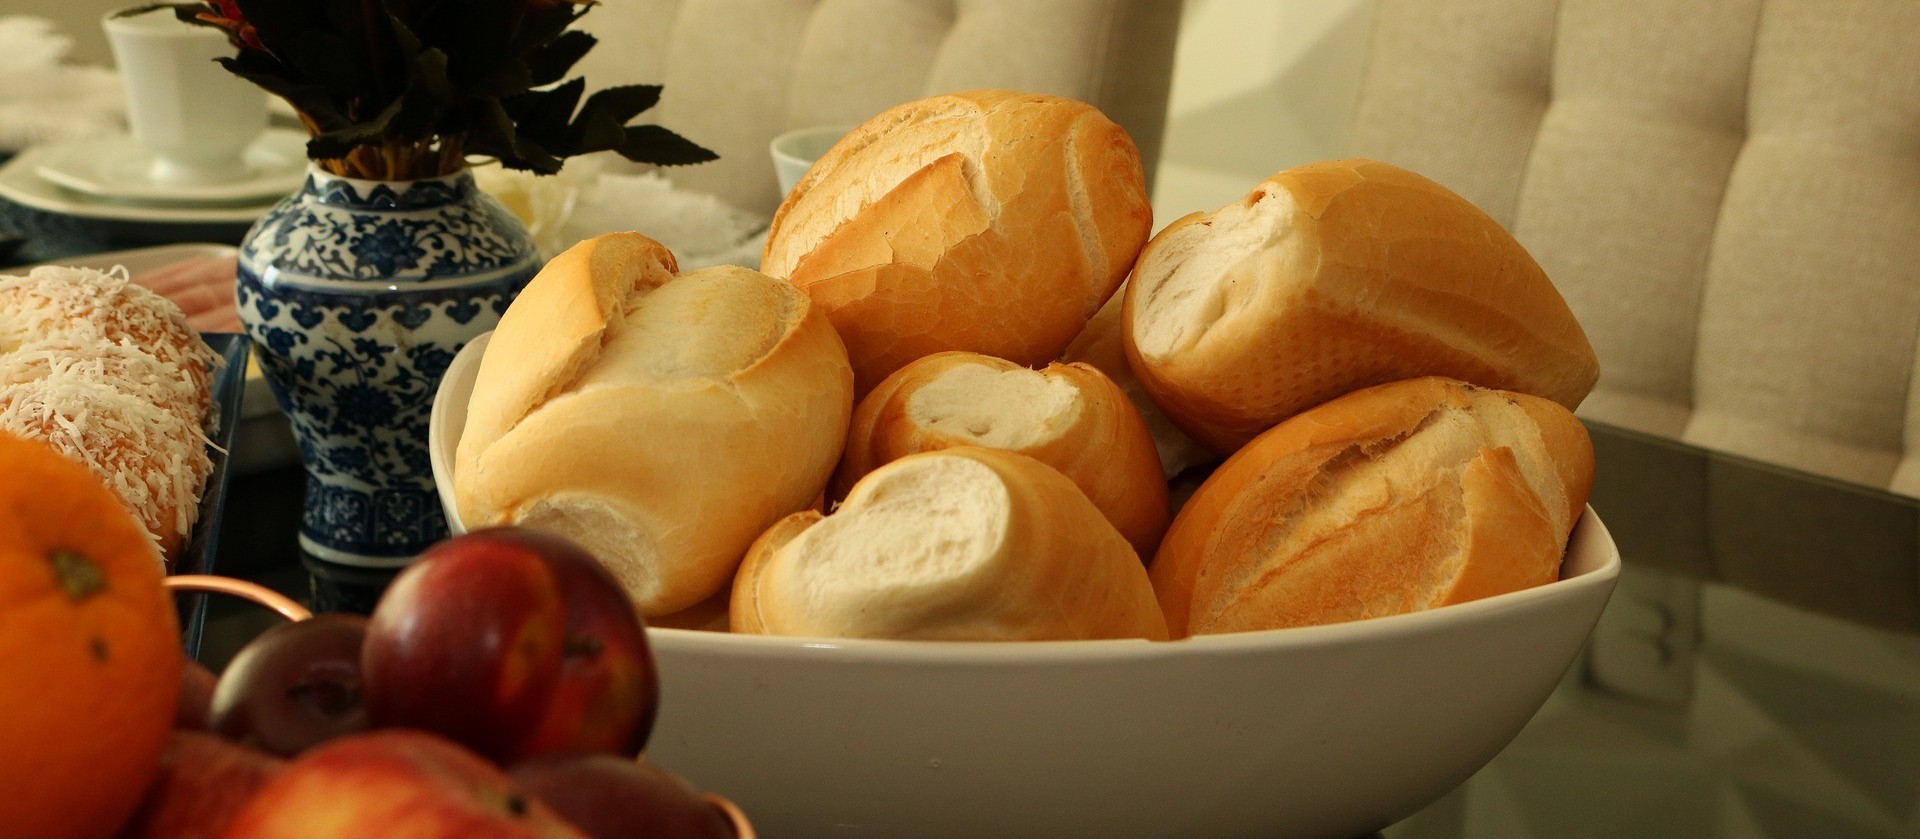 Com alta do trigo, pão francês pode ficar mais caro 